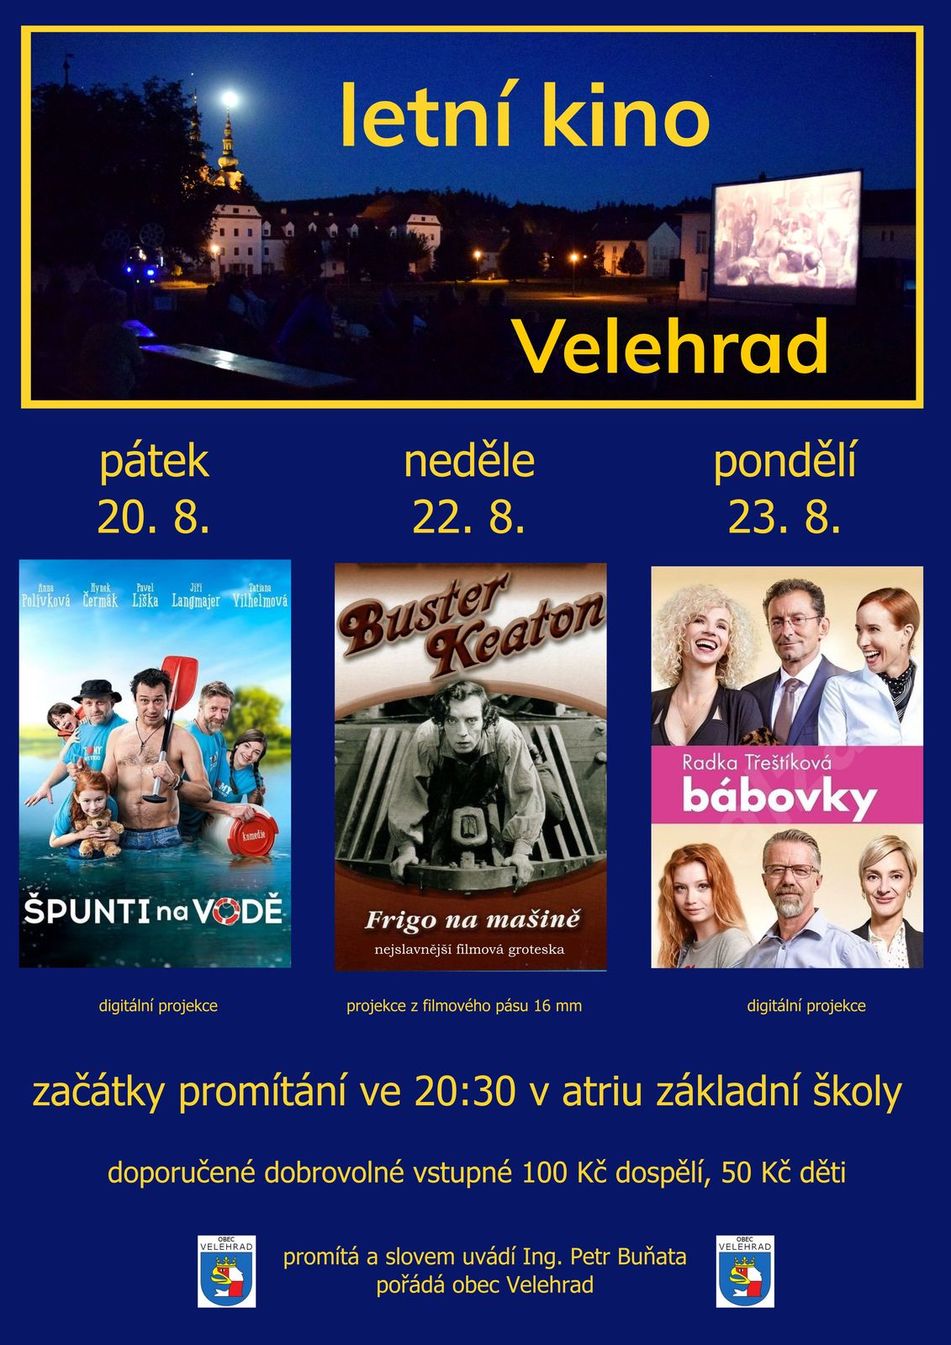 Letni kino Velehrad 2021.jpg